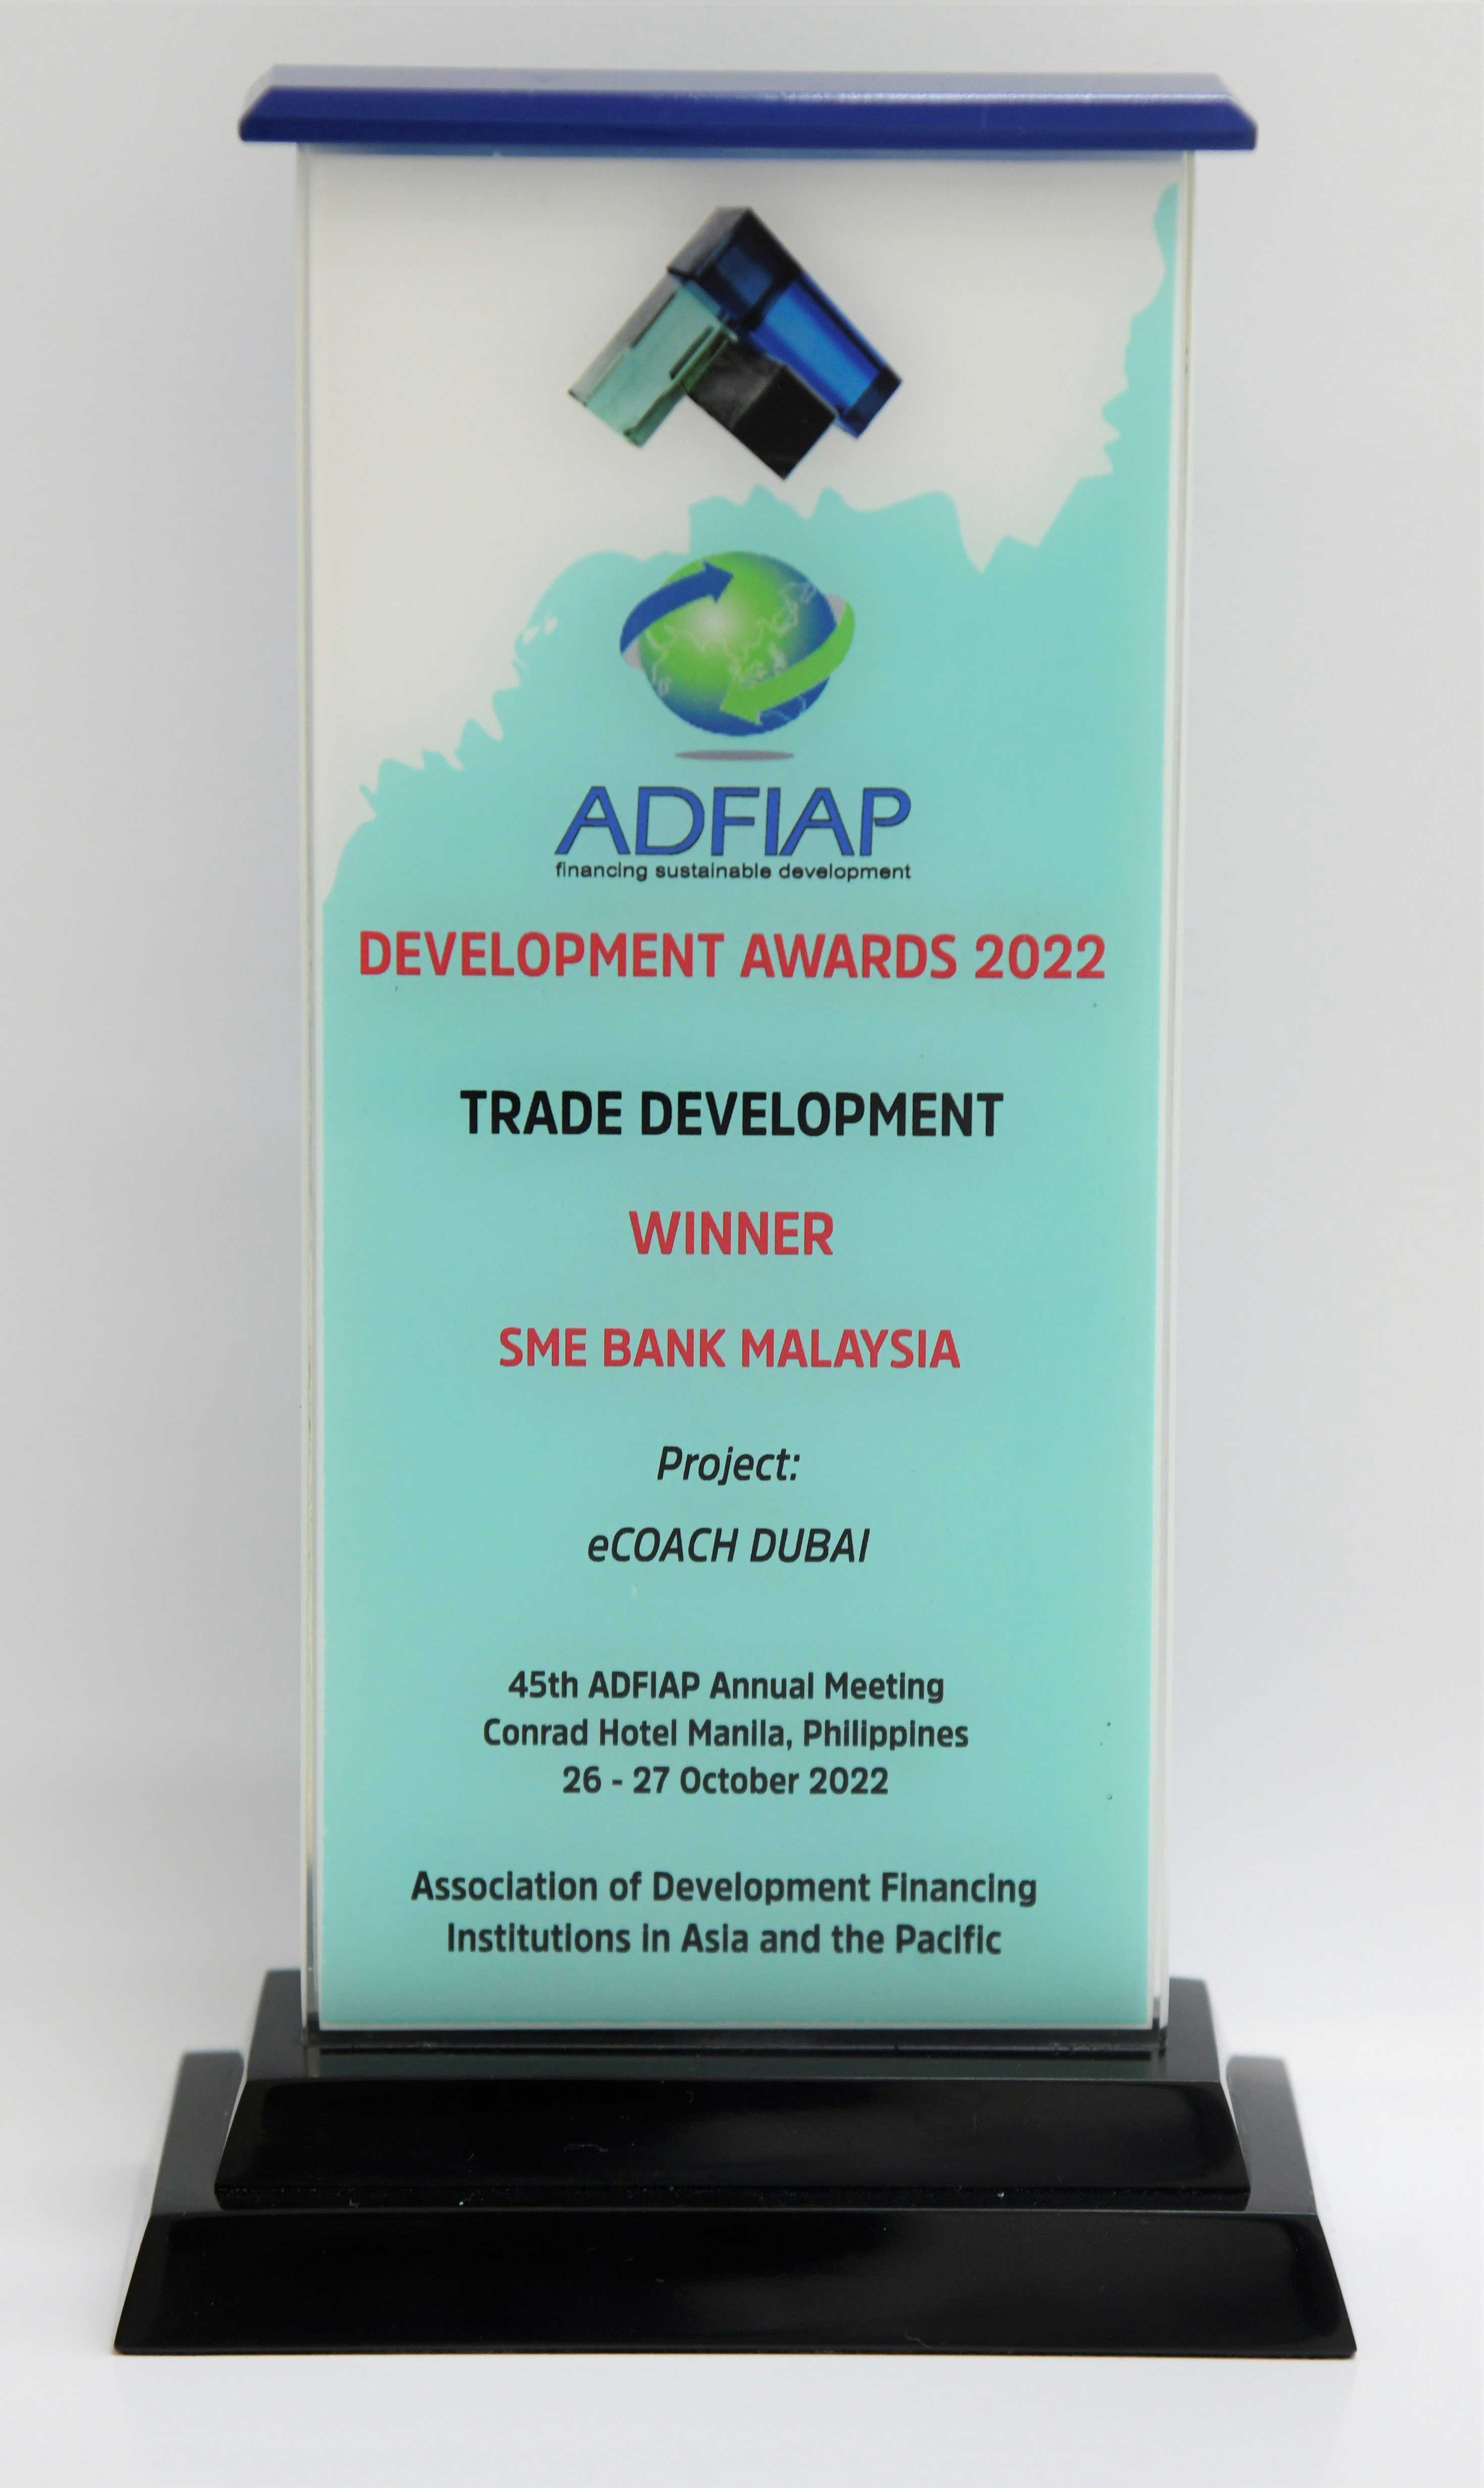 ADFIAP Awards 2022 - Trade Development Category